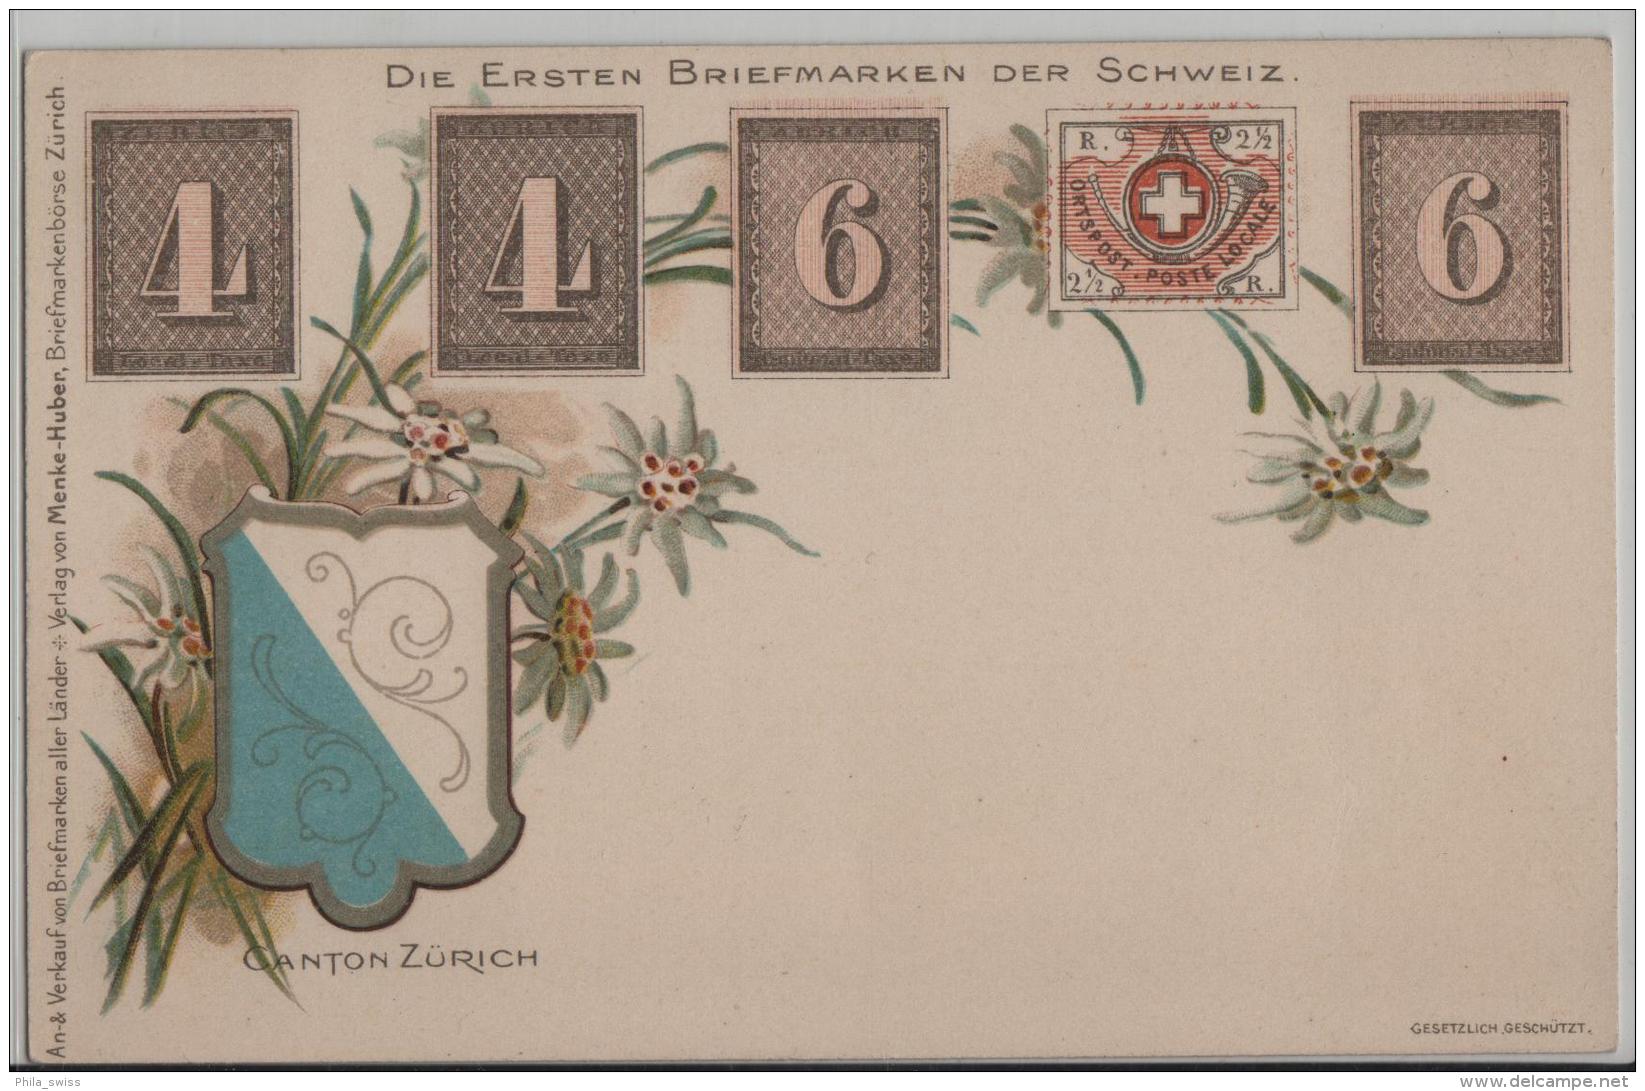 Die Ersten Briefmarken Der Schweiz - Canton Zürich 4 & 6 - Litho - Zürich